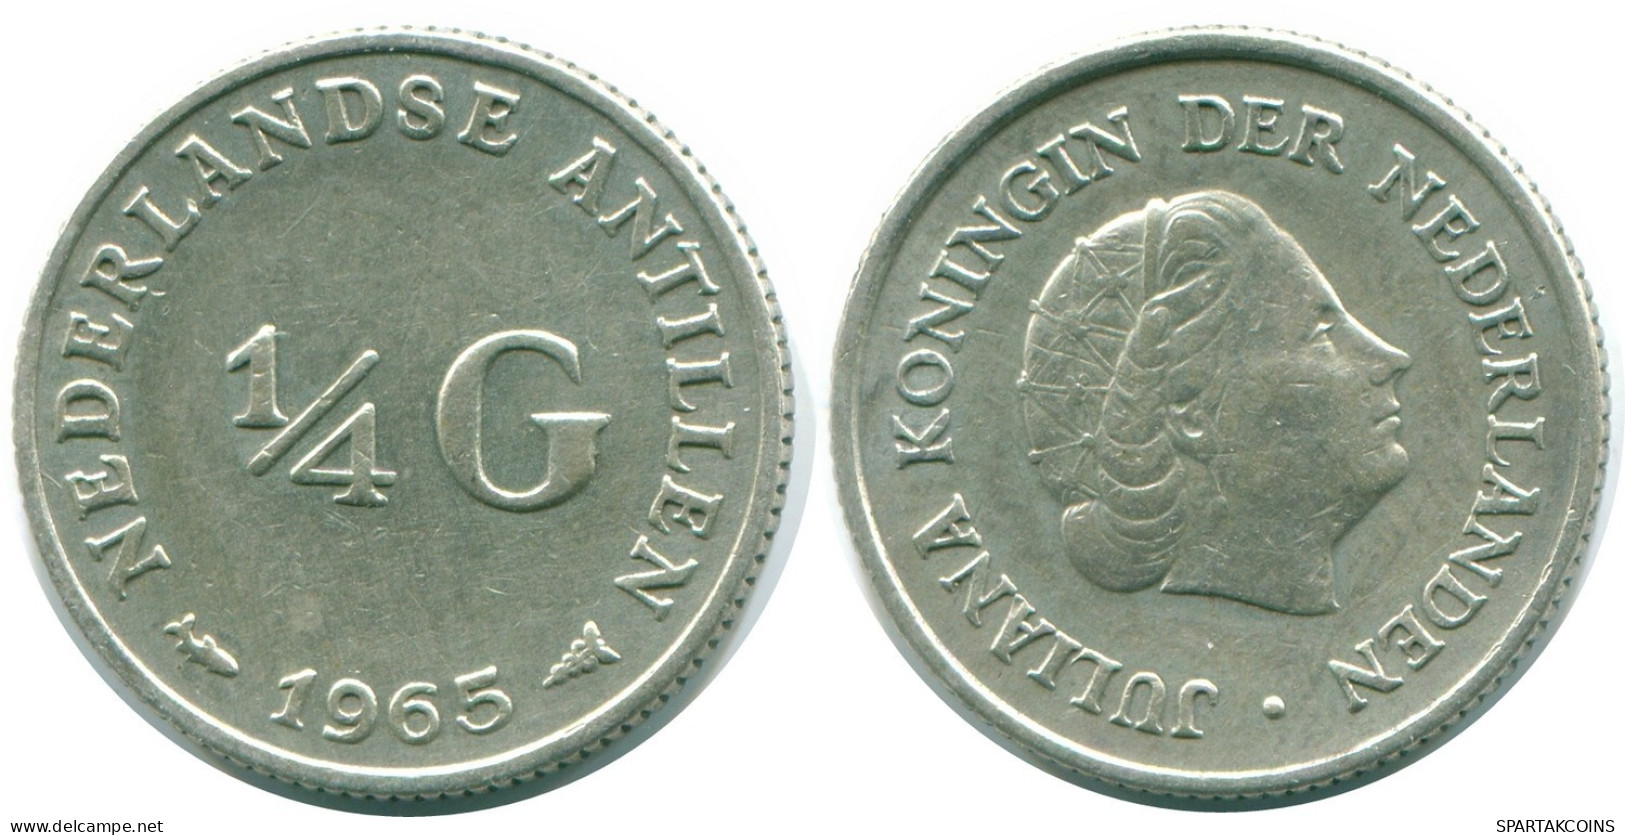 1/4 GULDEN 1965 NIEDERLÄNDISCHE ANTILLEN SILBER Koloniale Münze #NL11301.4.D.A - Antilles Néerlandaises